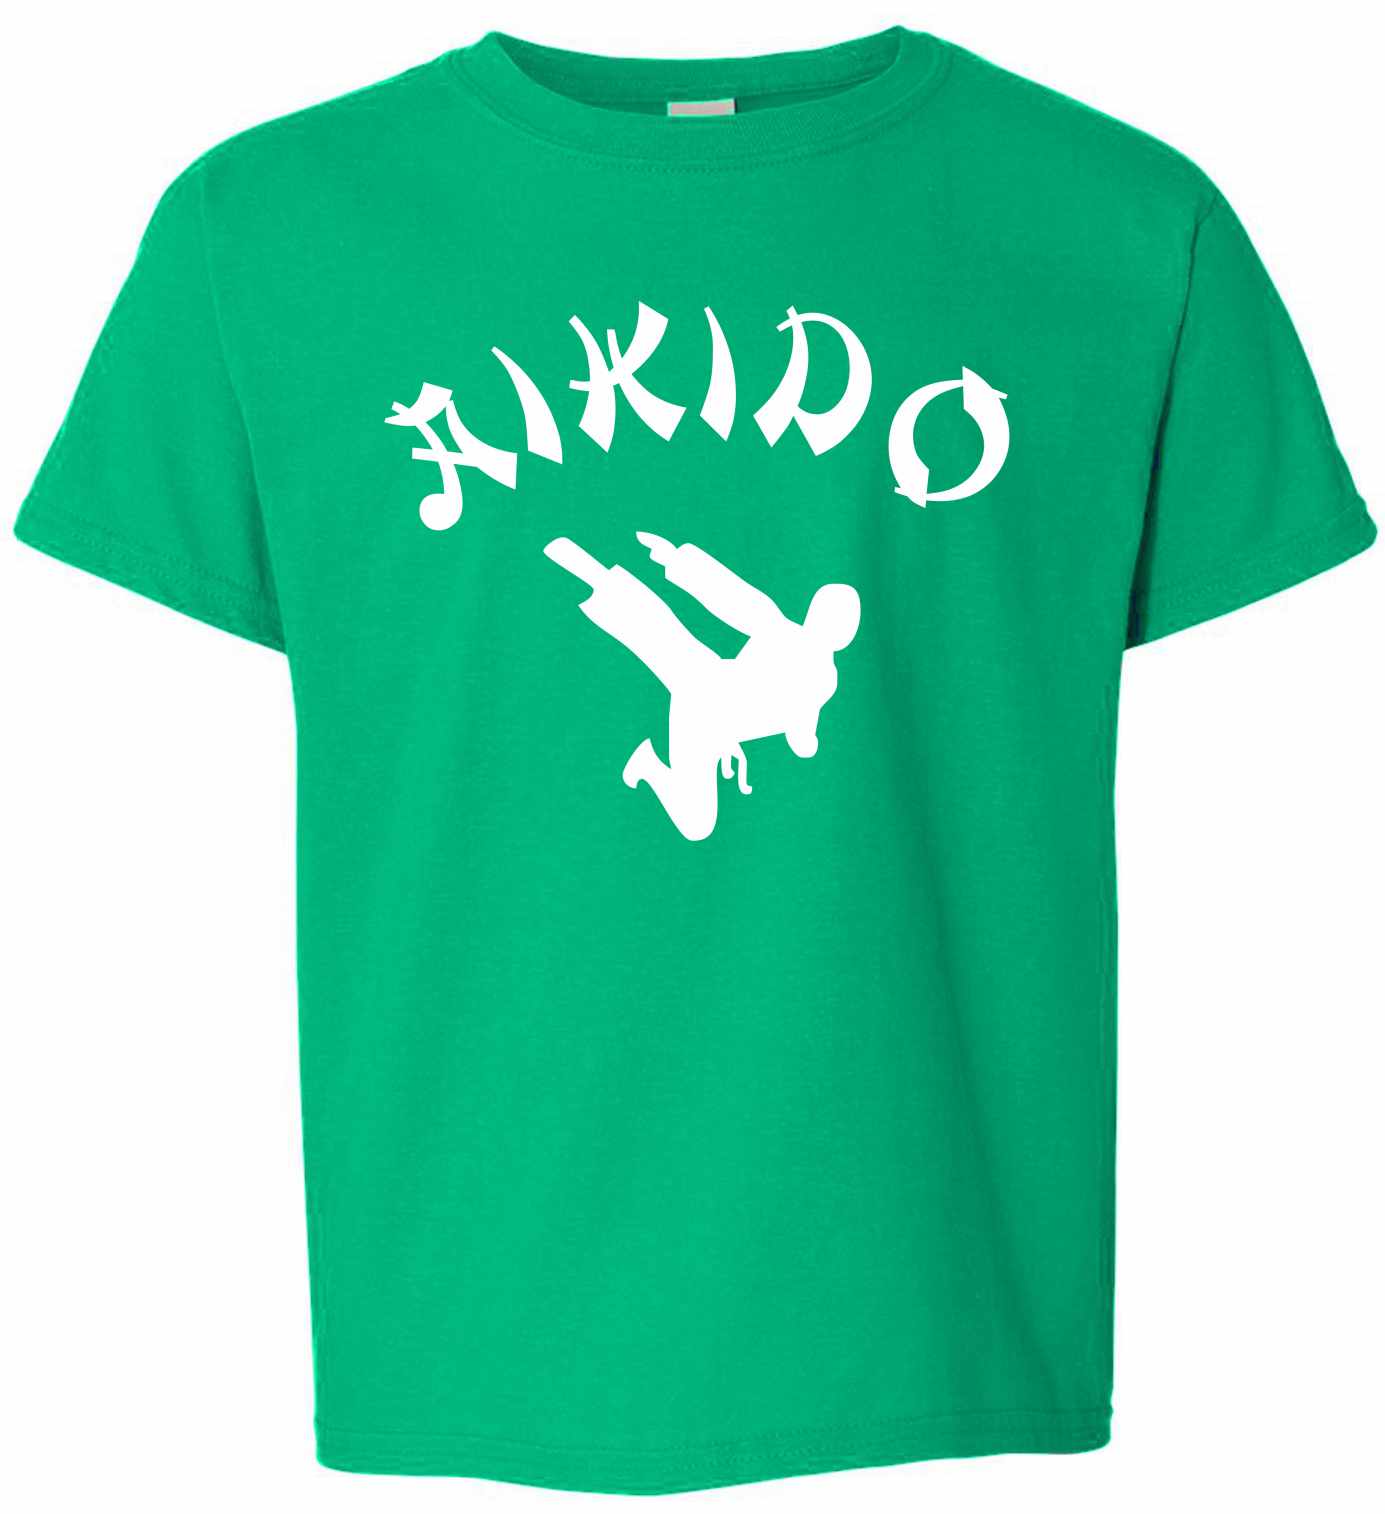 AIKIDO on Kids T-Shirt (#816-201)